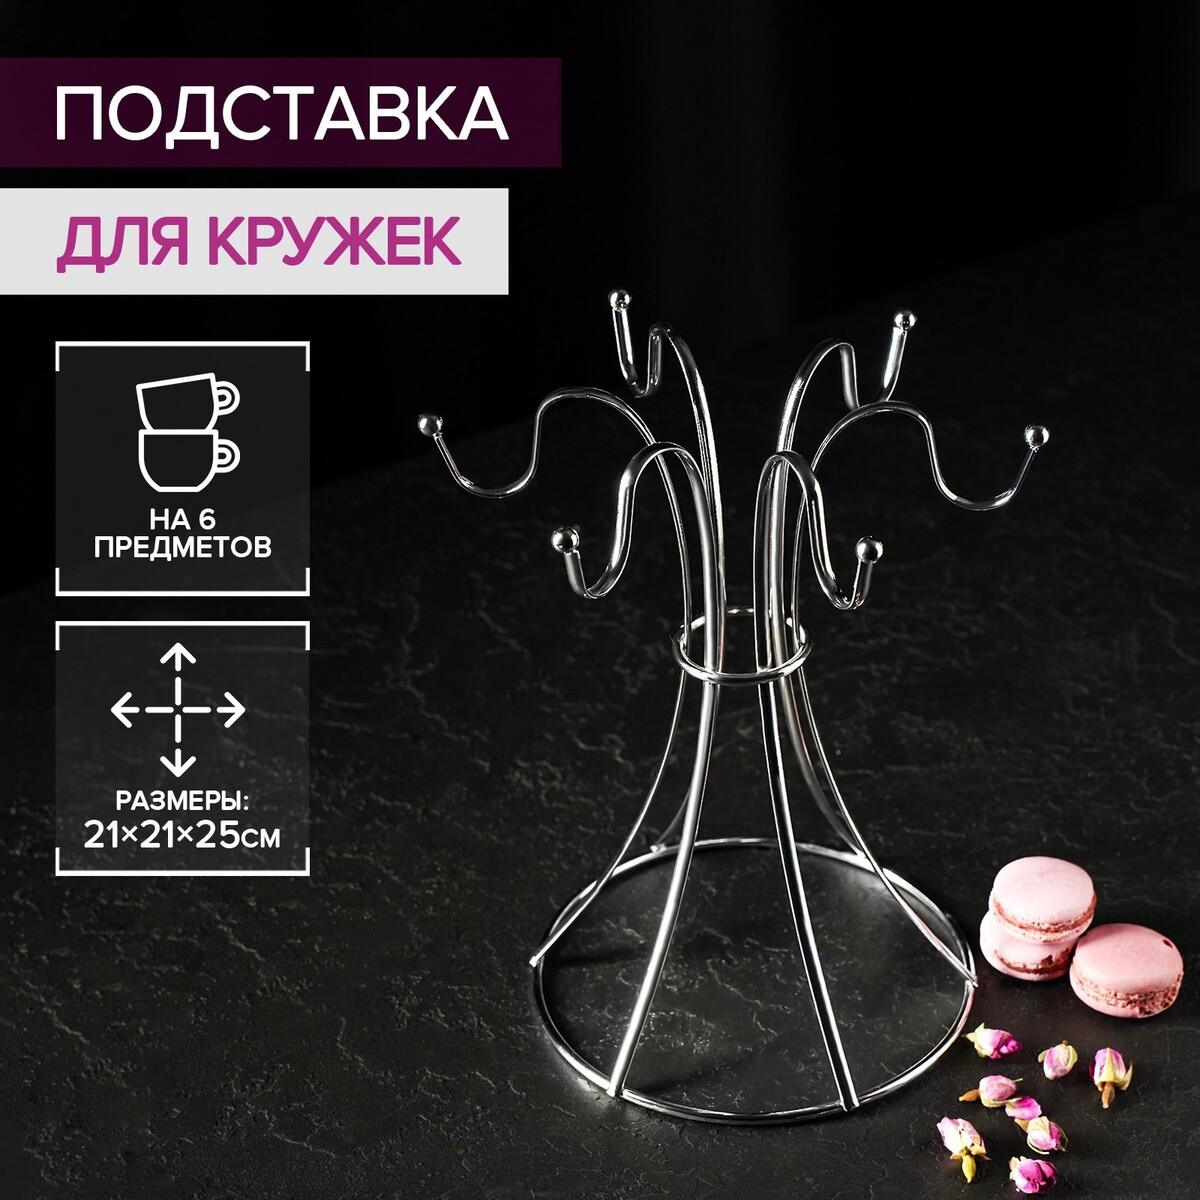 Купить подставку для кружек и бокалов в Минске (бирдекели, костеры)